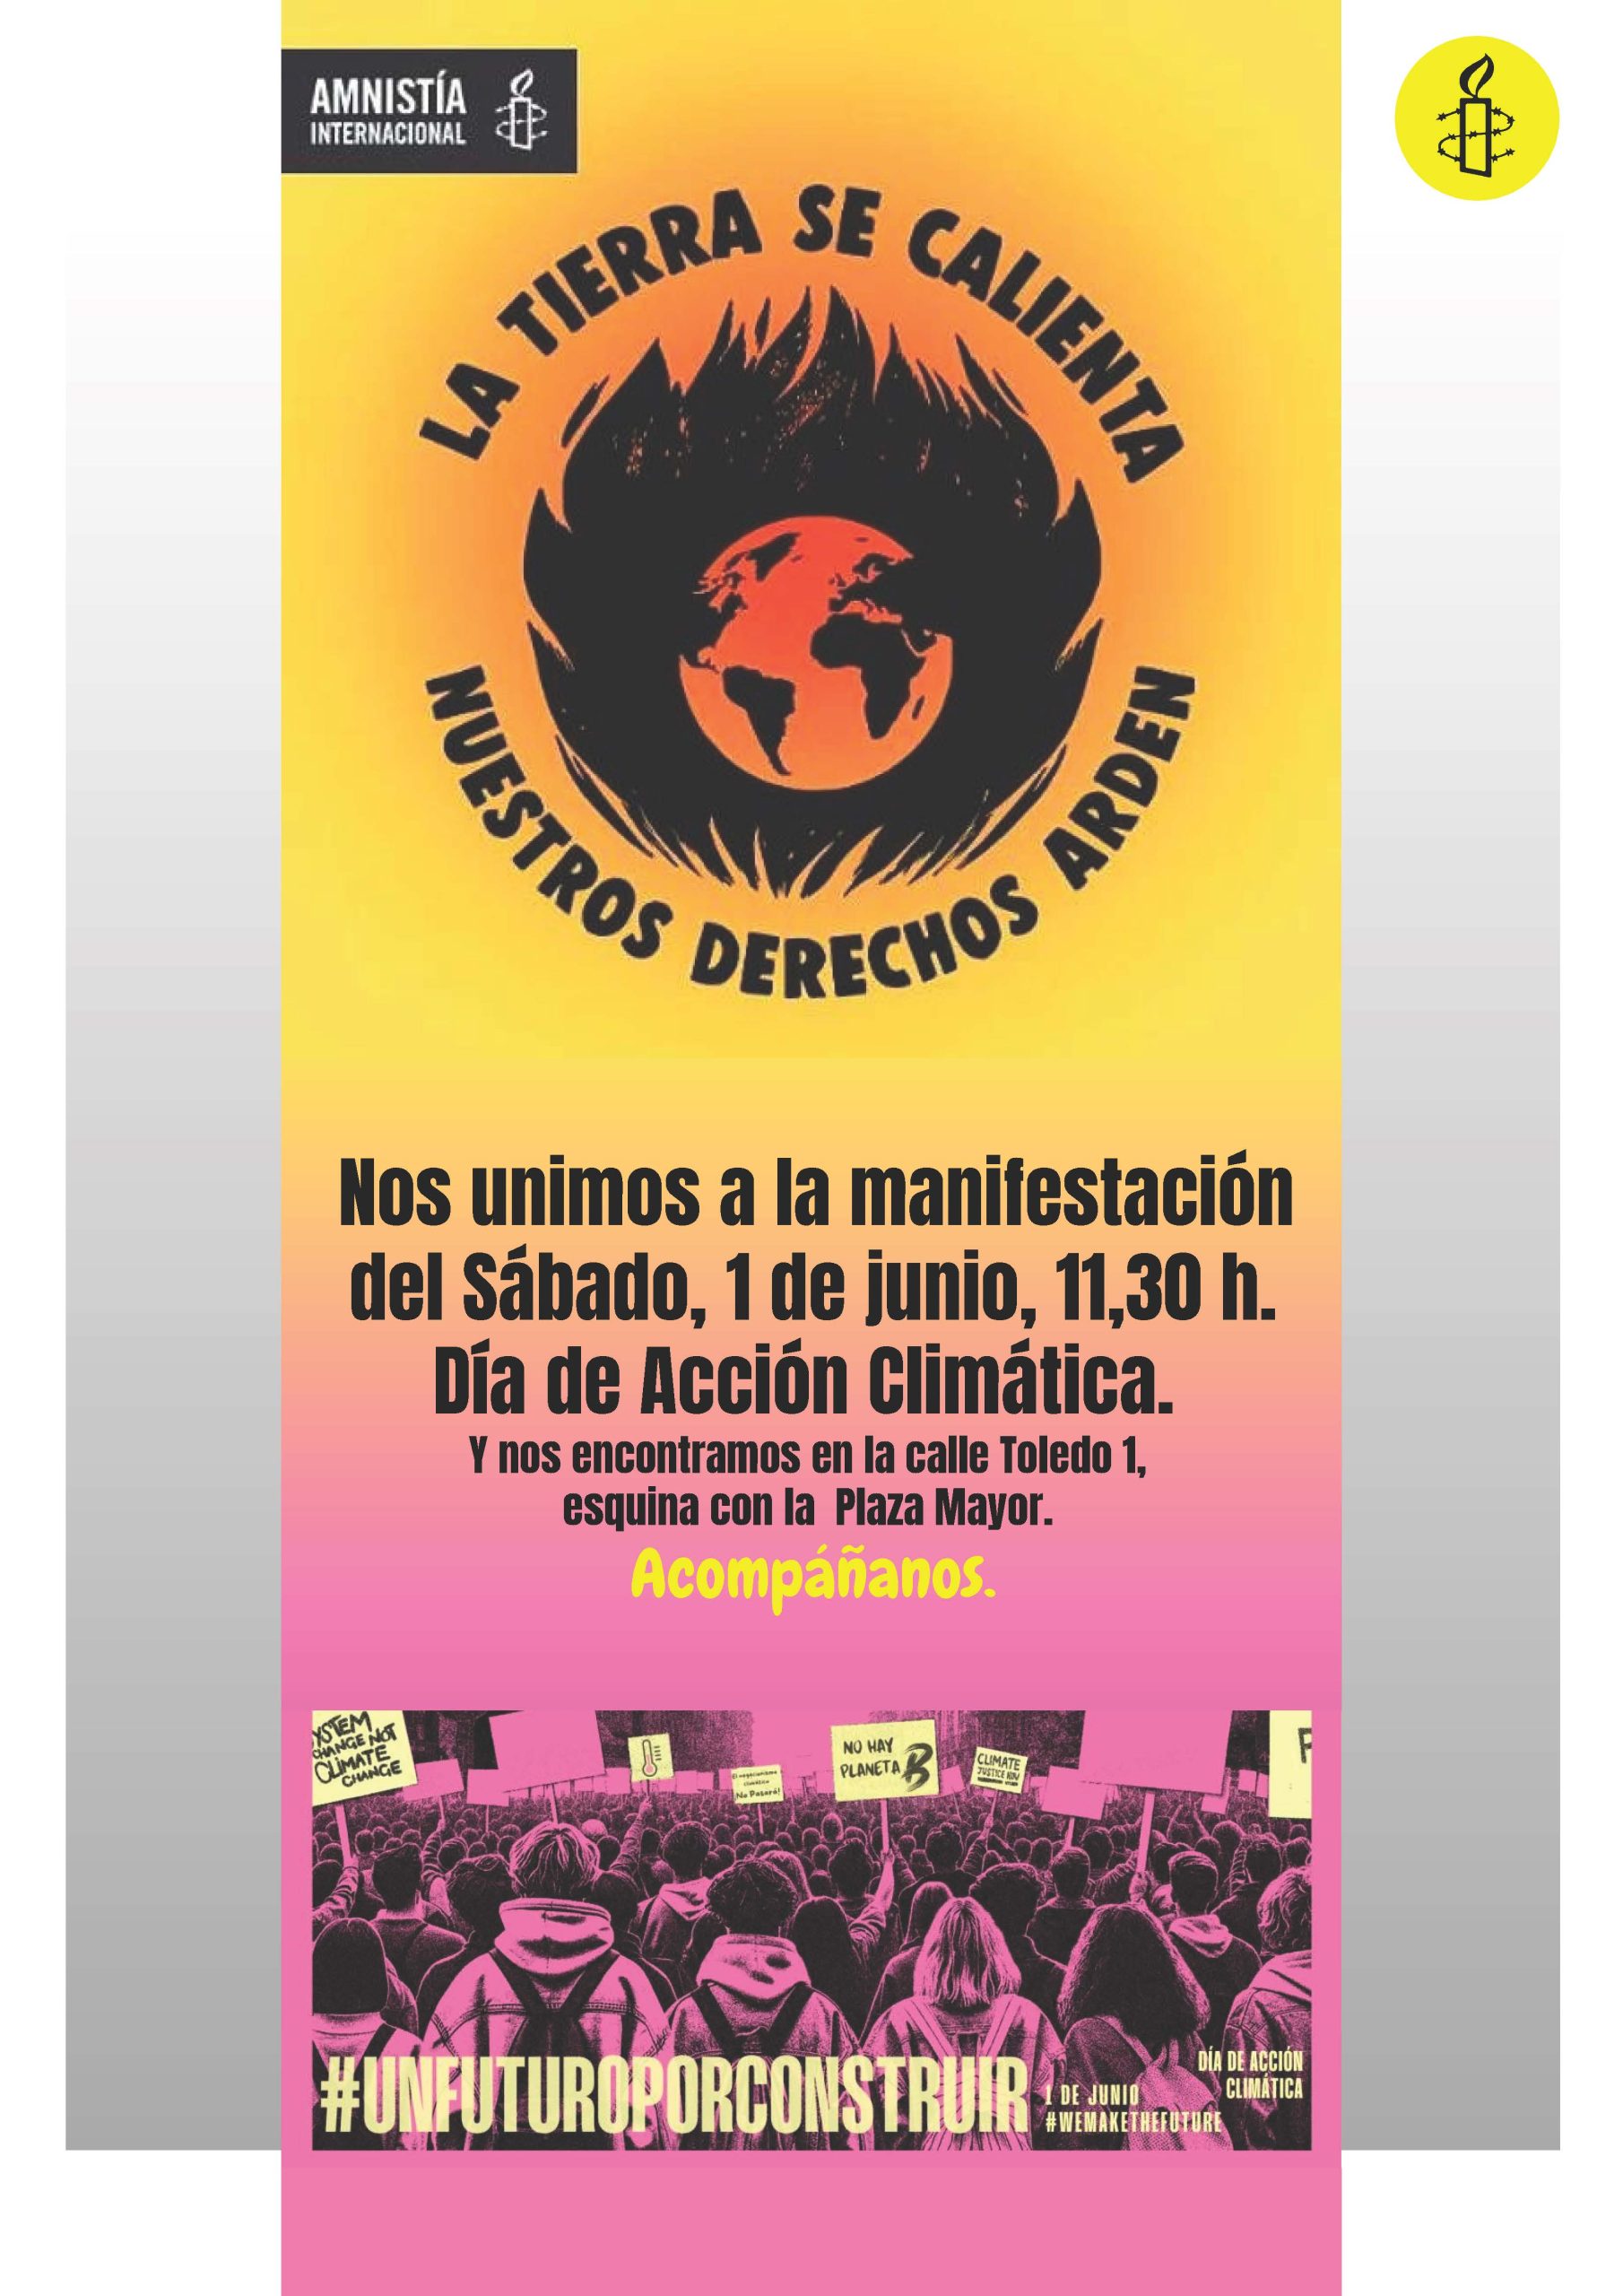 [Madrid] Arden nuestros derechos